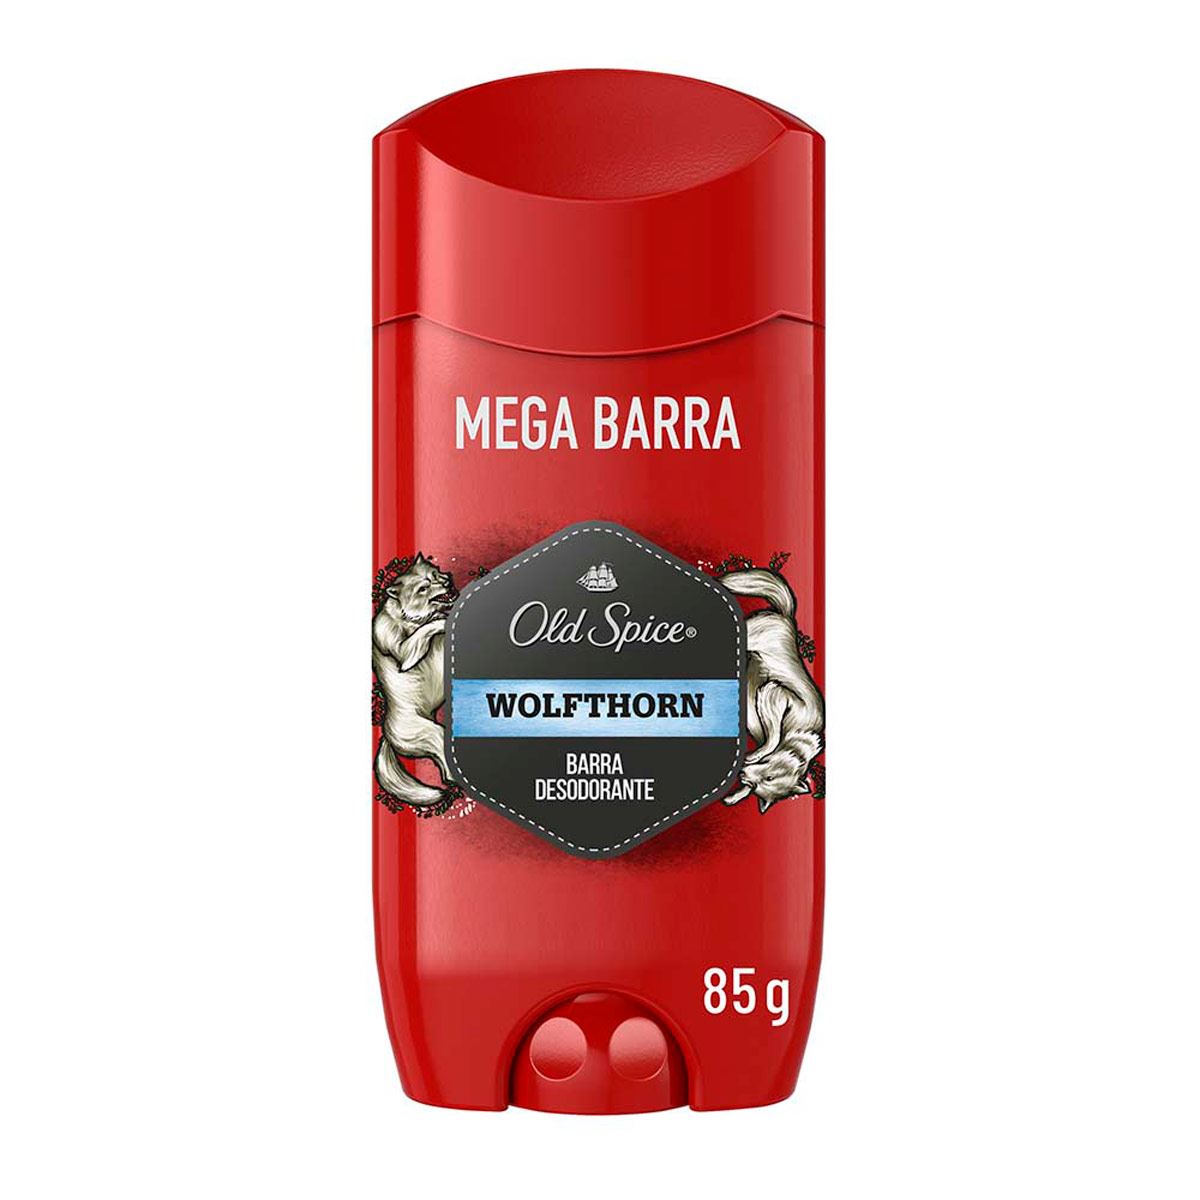 Desodorante en Barra Old Spice Wolfthorn Mega Barra para Hombre 85g